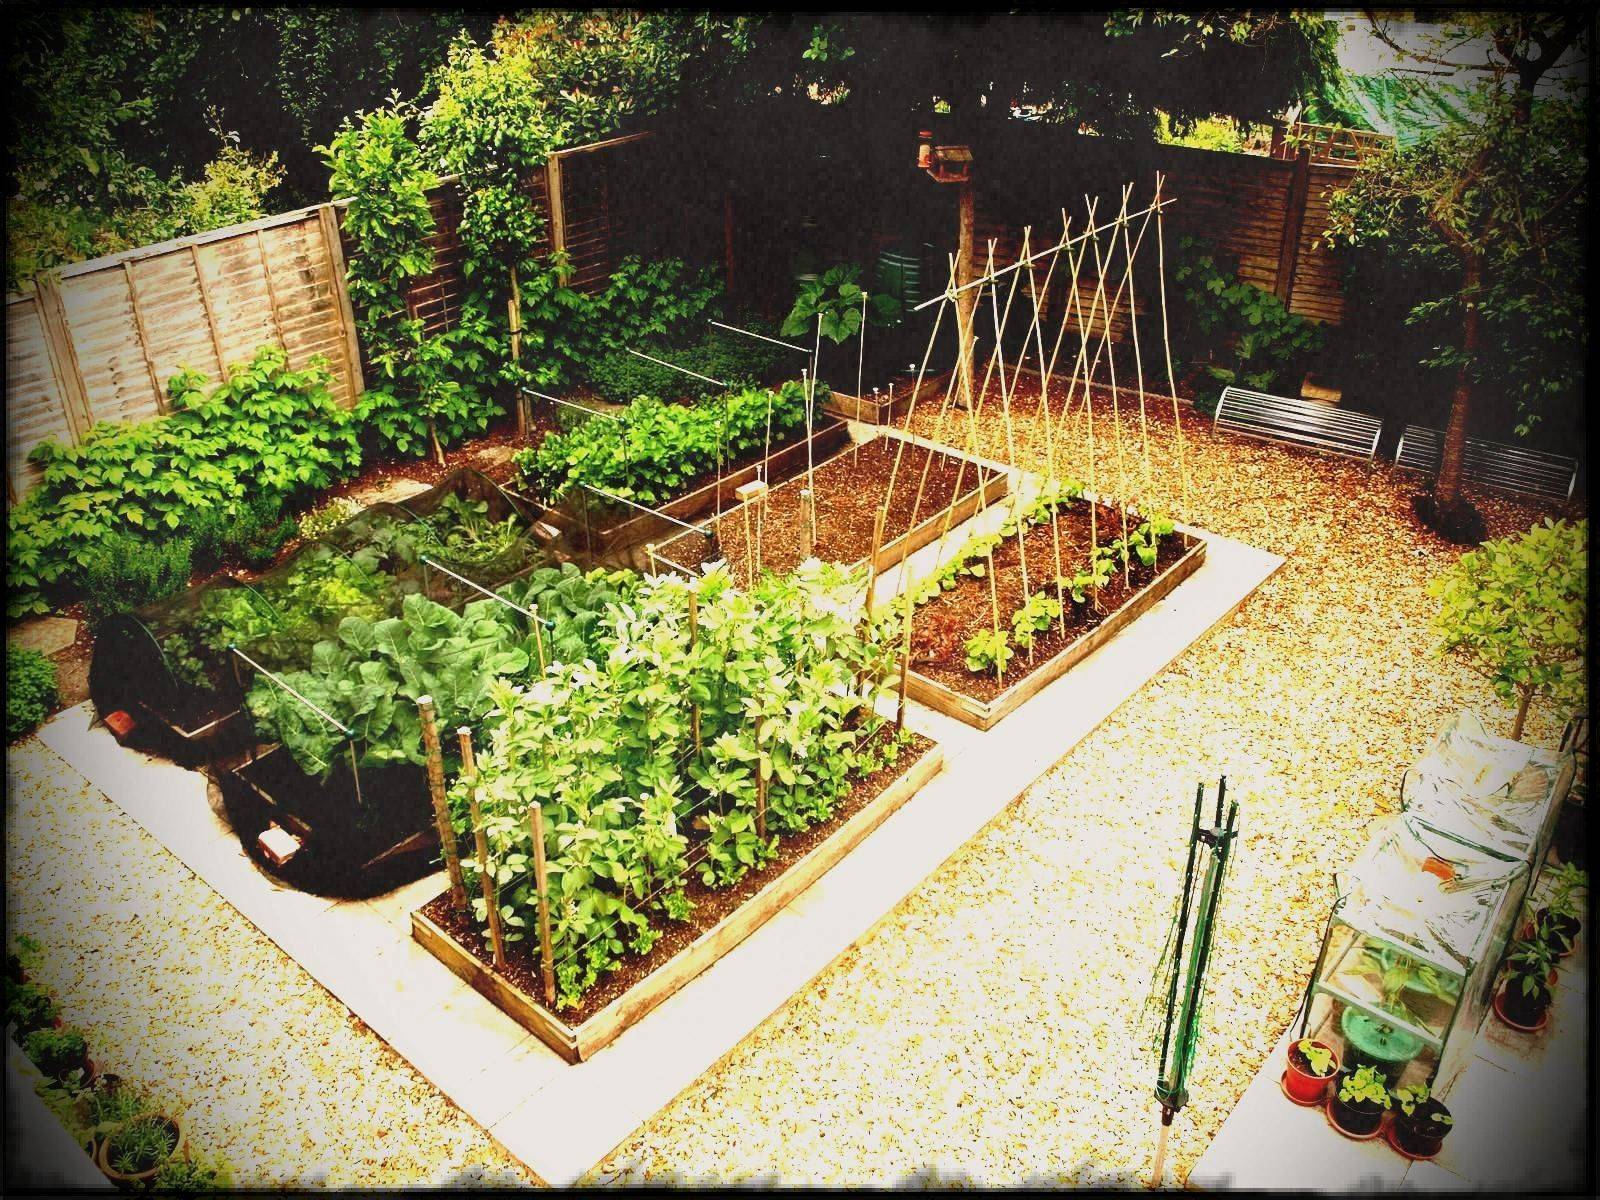 A Home Vegetable Garden